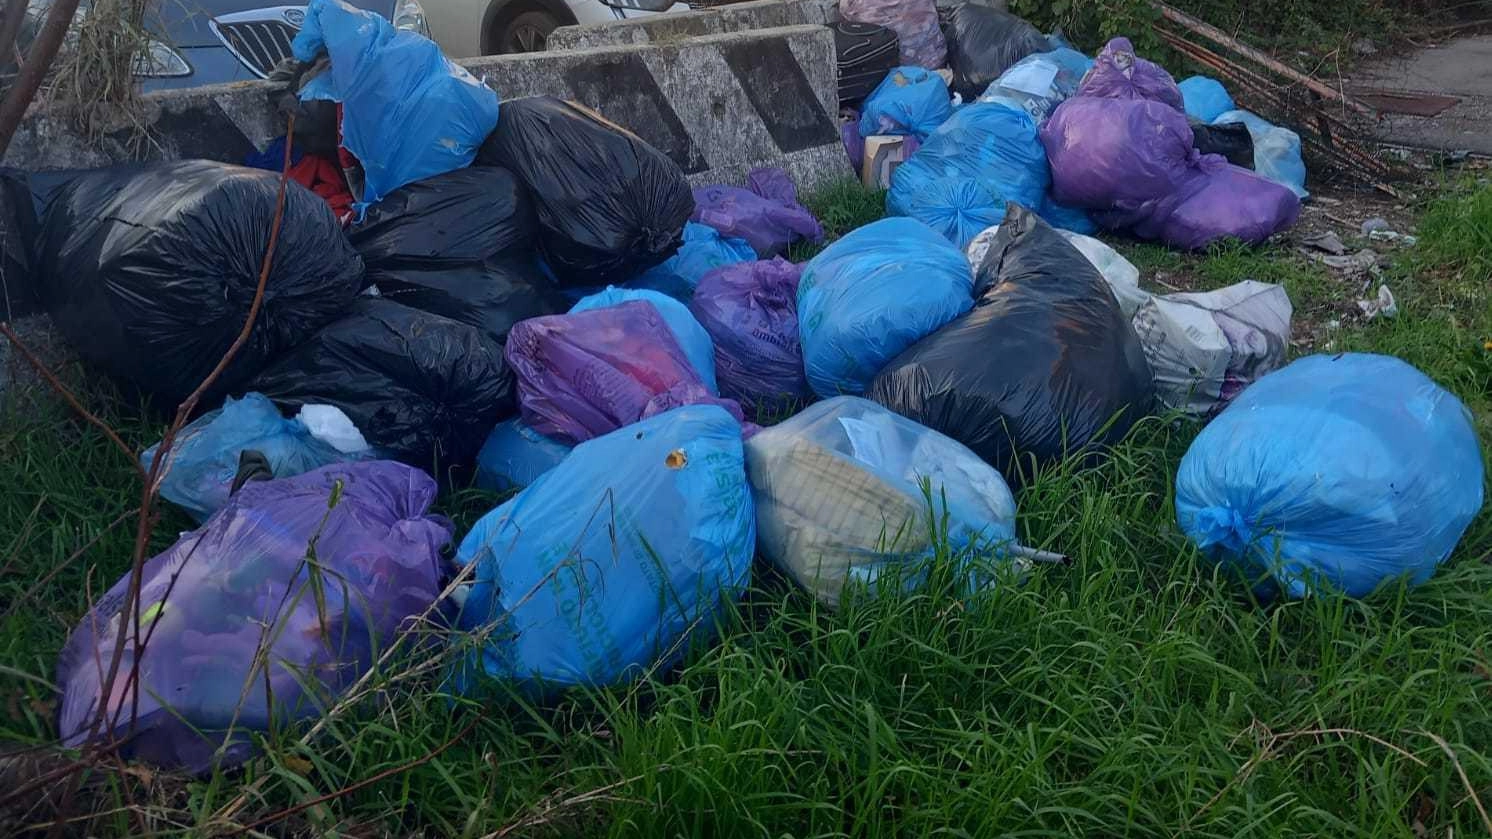 Sacchi dei rifiuti abbandonati, 6.500 euro di multa